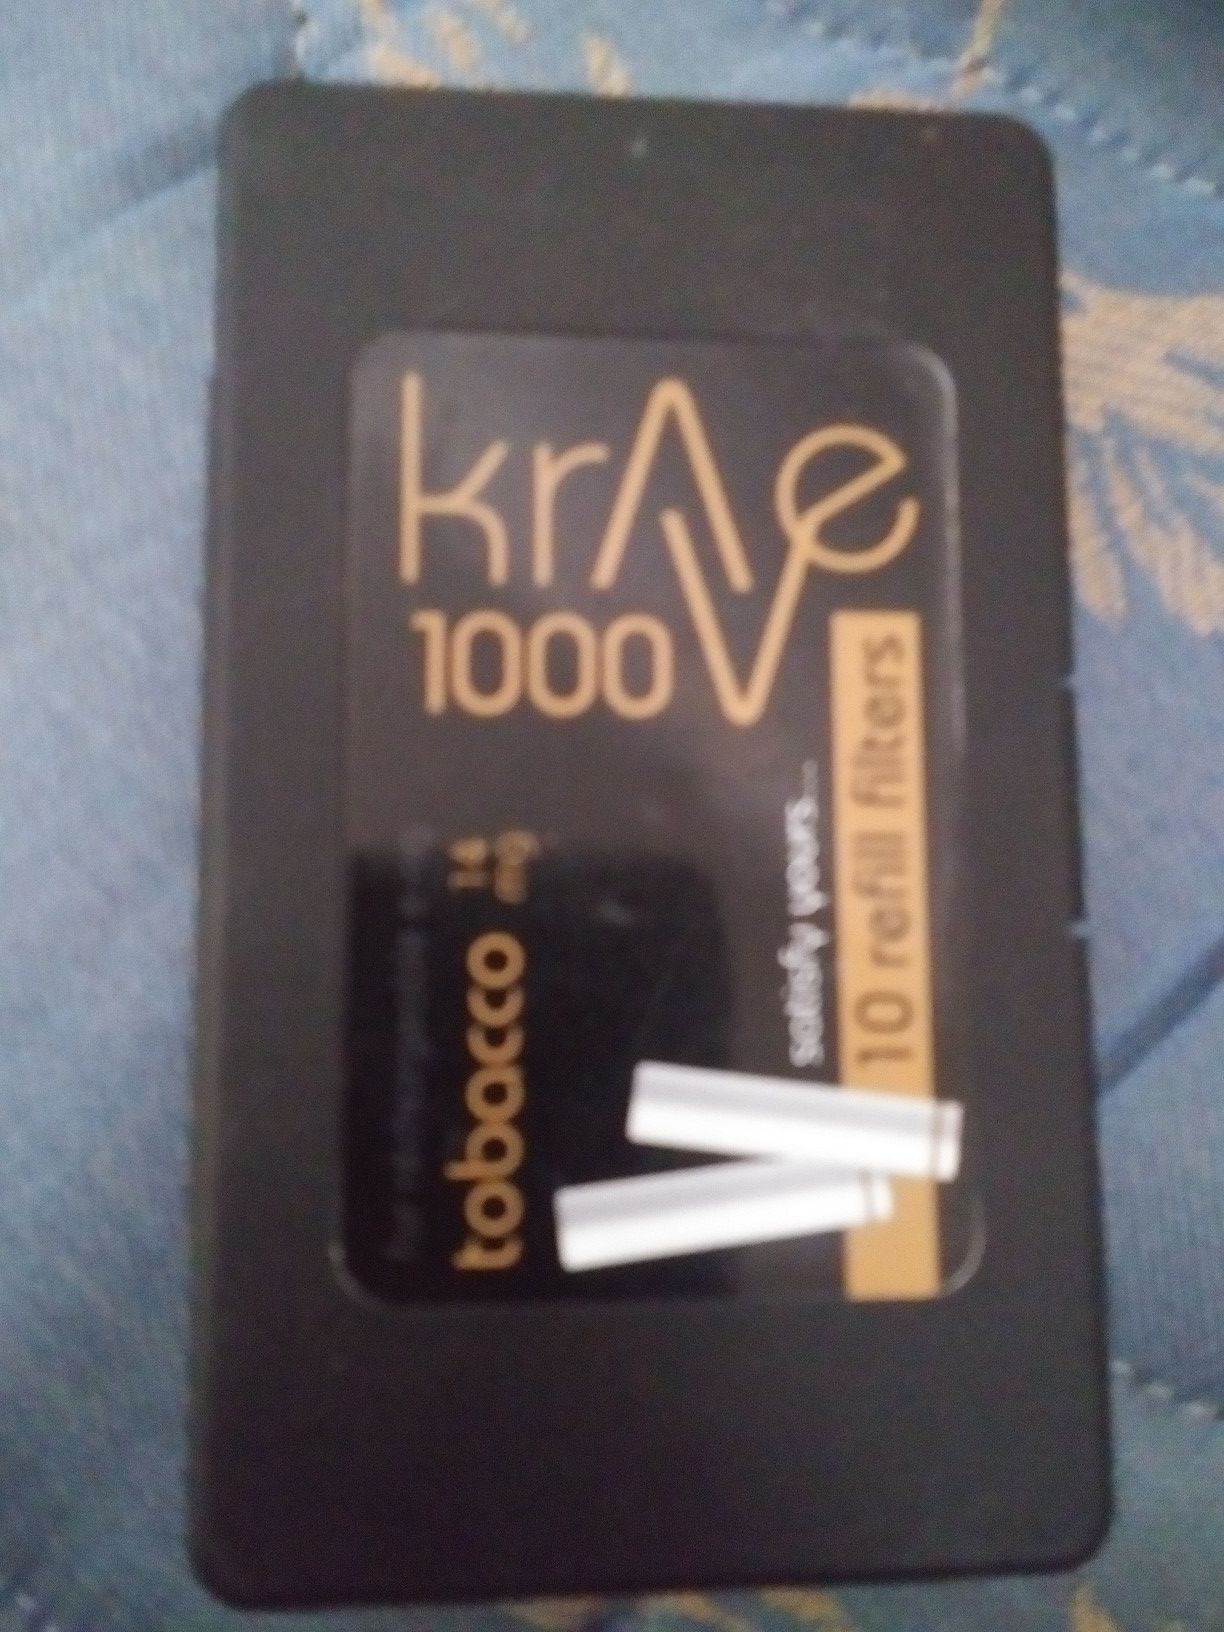 Krae 1000. 10 free fillters